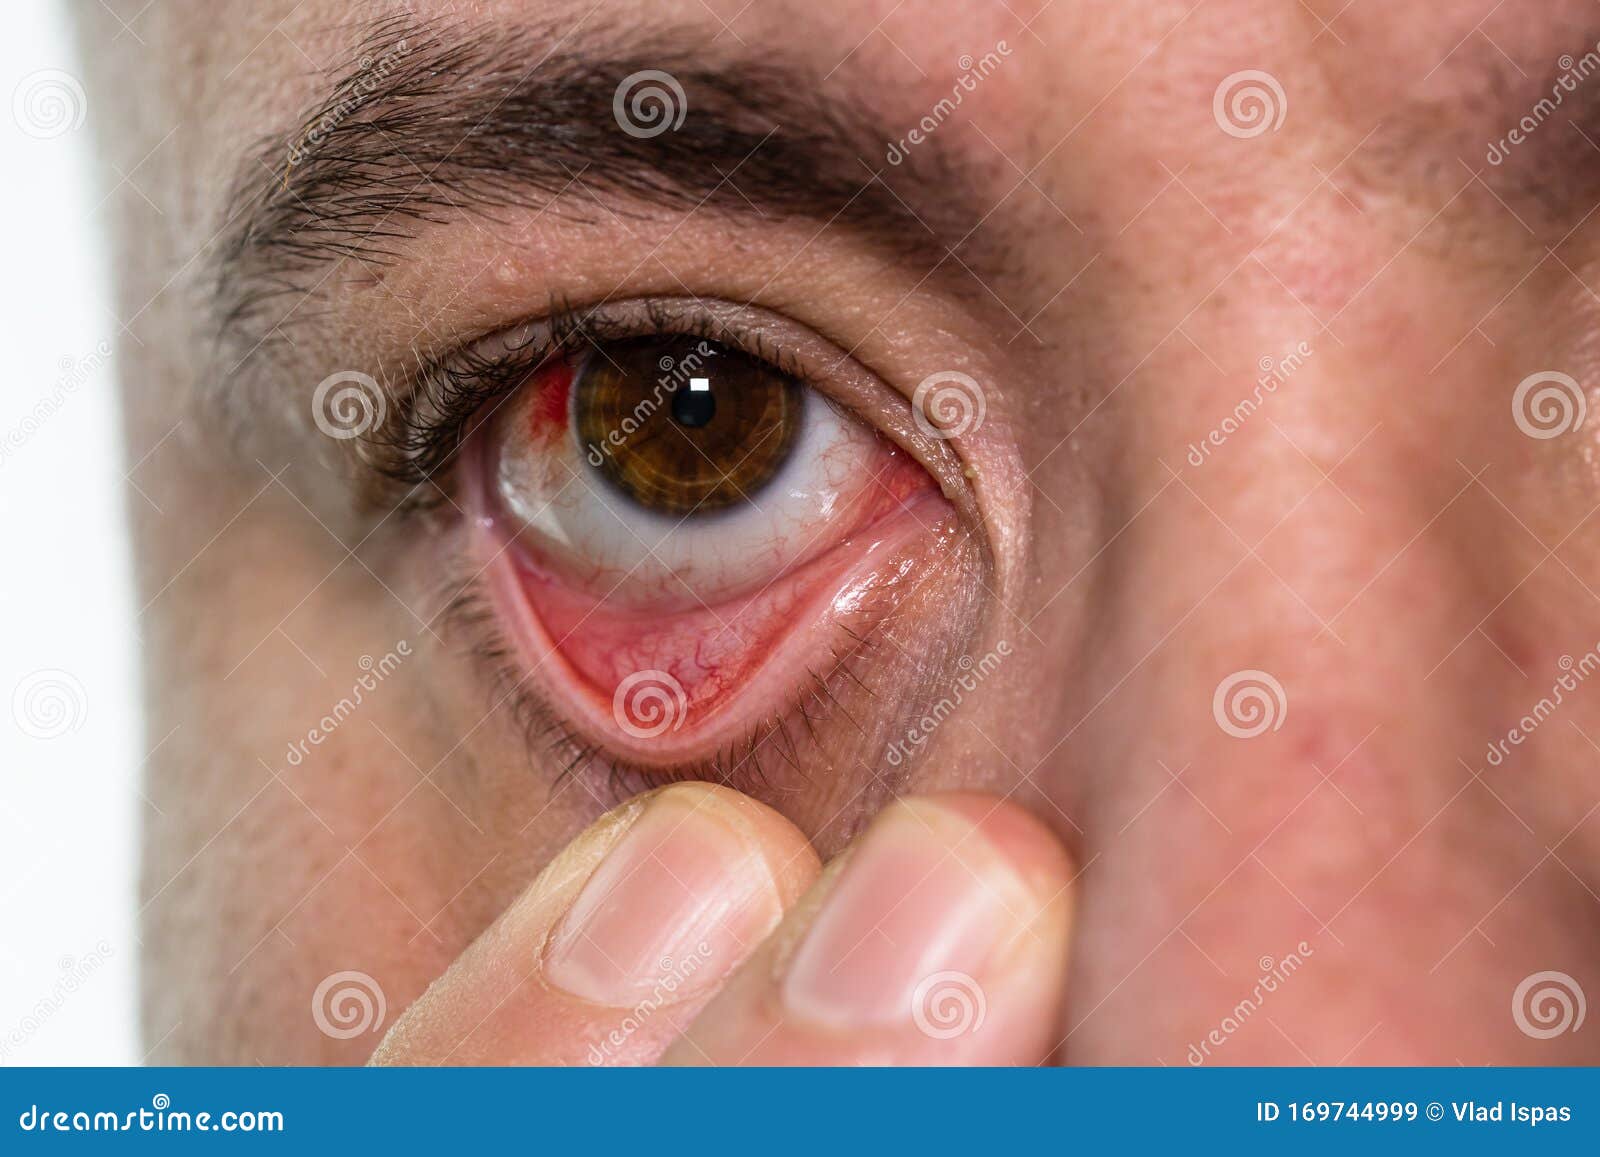 Lesión Ocular, Con Un Vaso Sanguíneo En El Ojo, Fatiga, Problemas Los Vasos Sanguíneos Imagen de archivo - Imagen ojos, eyeball: 169744999